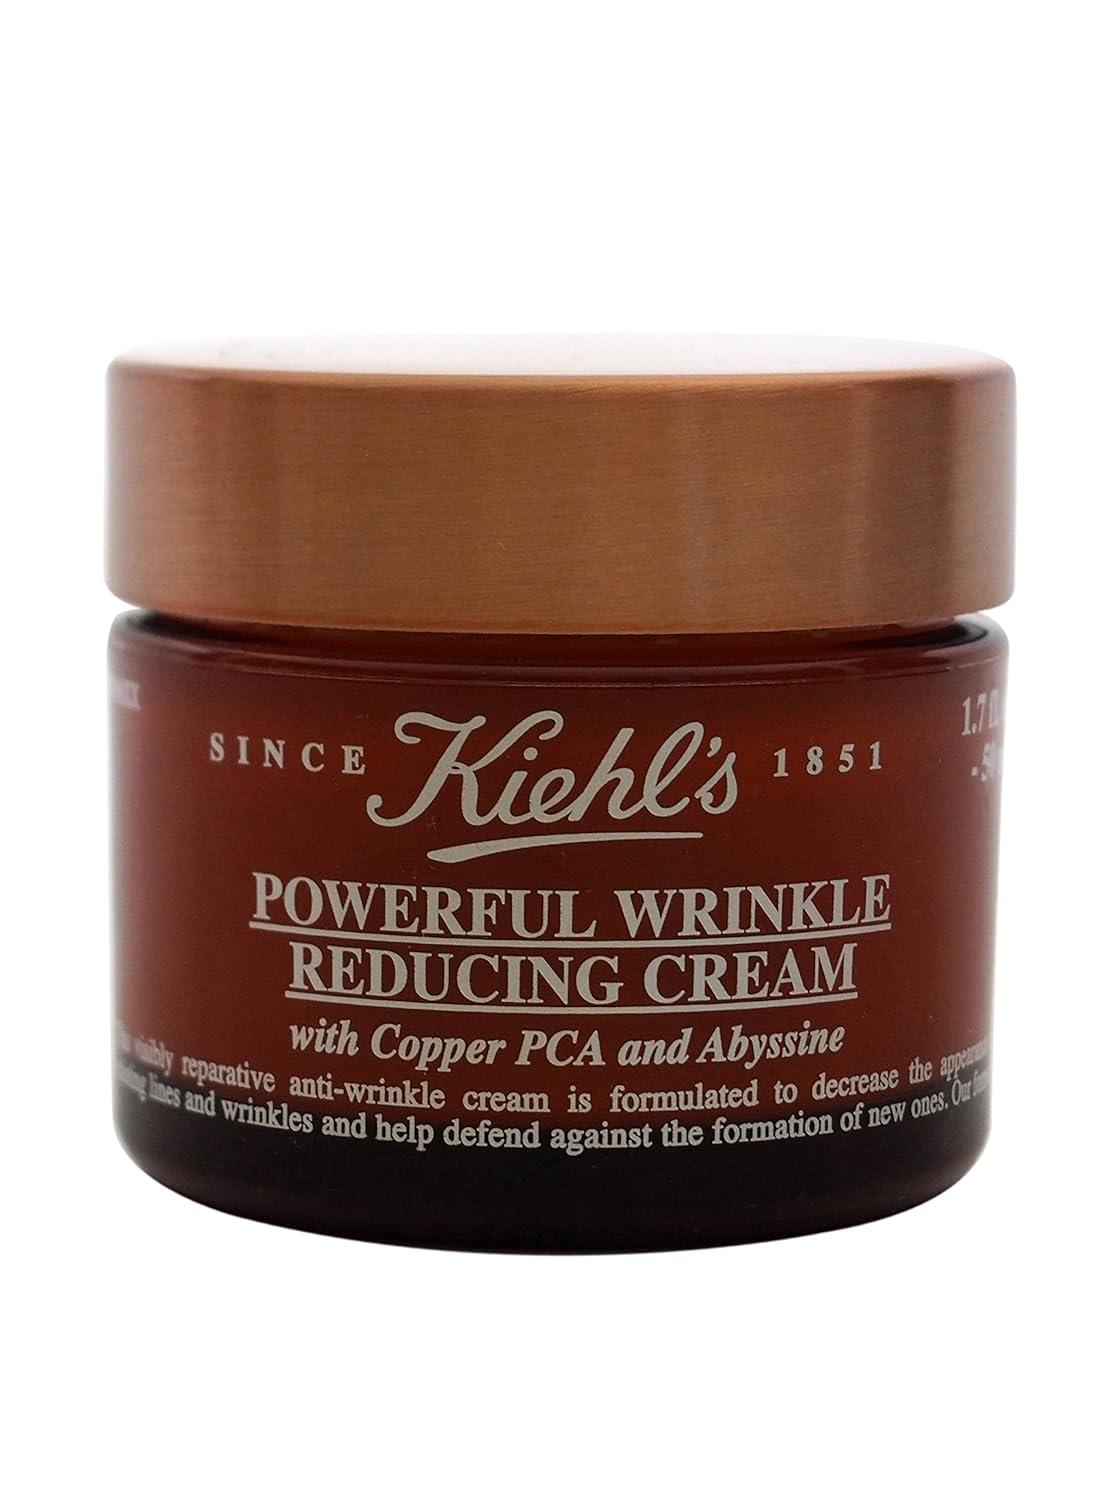 kiehl's-powerful-wrinkle-reducing-cream-50ml/1.7oz